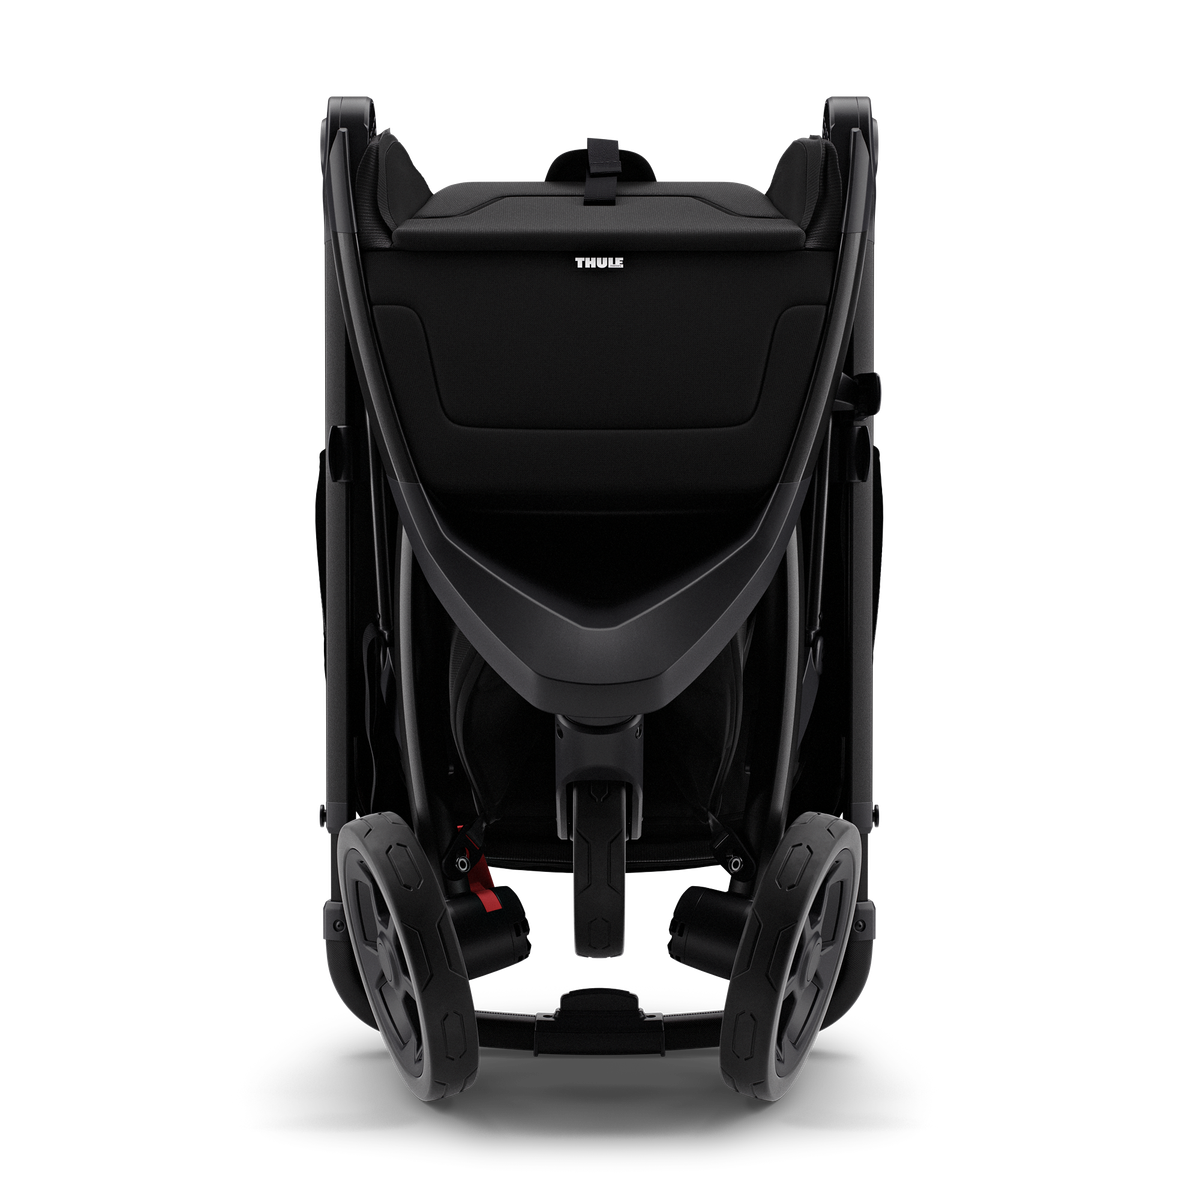 Thule Spring city stroller gray melange on black